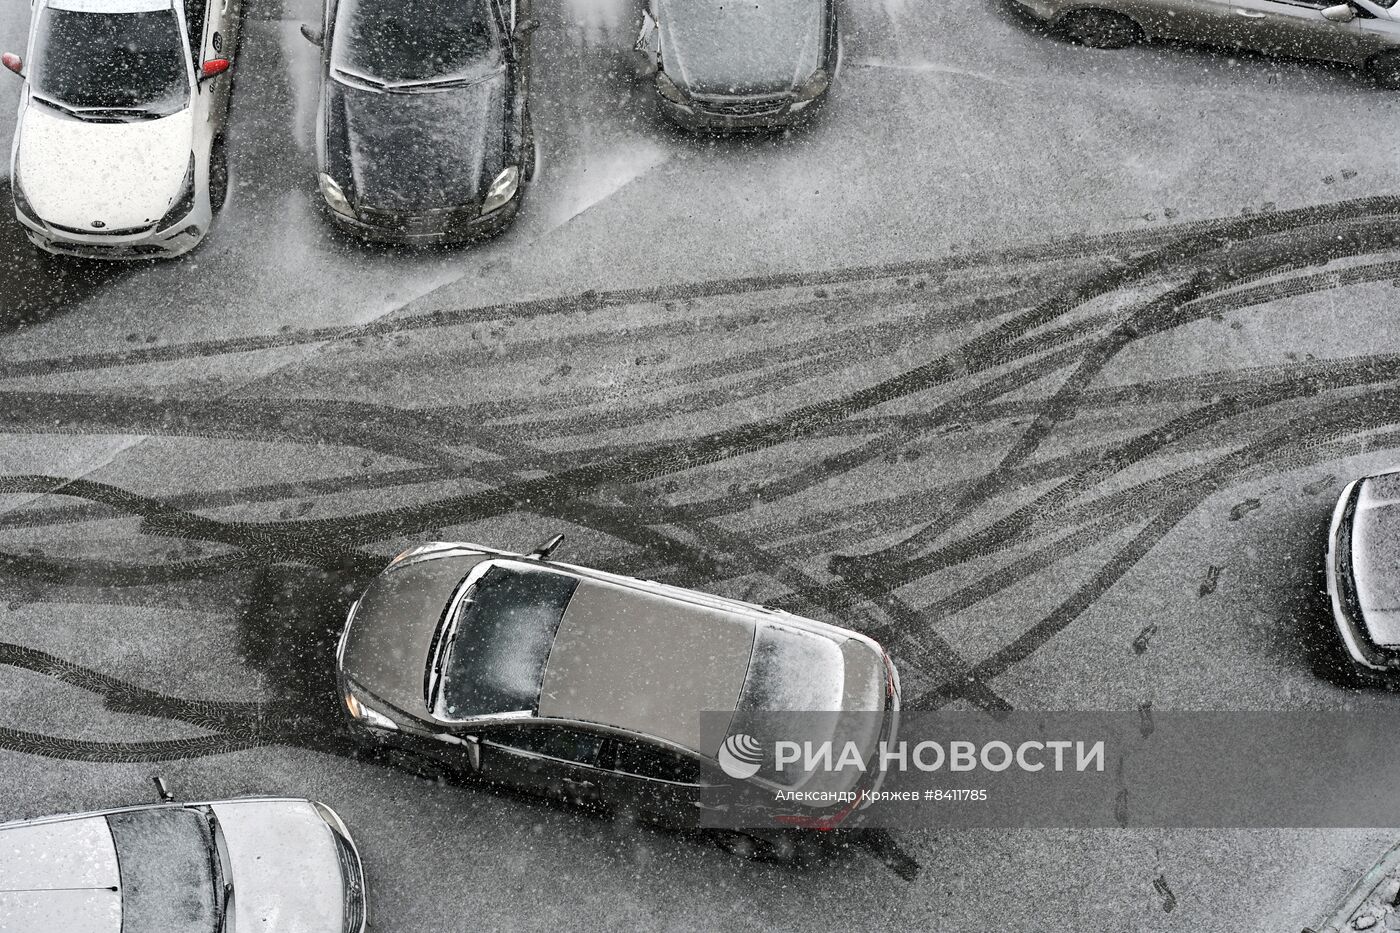 Апрельский снегопад в Новосибирске